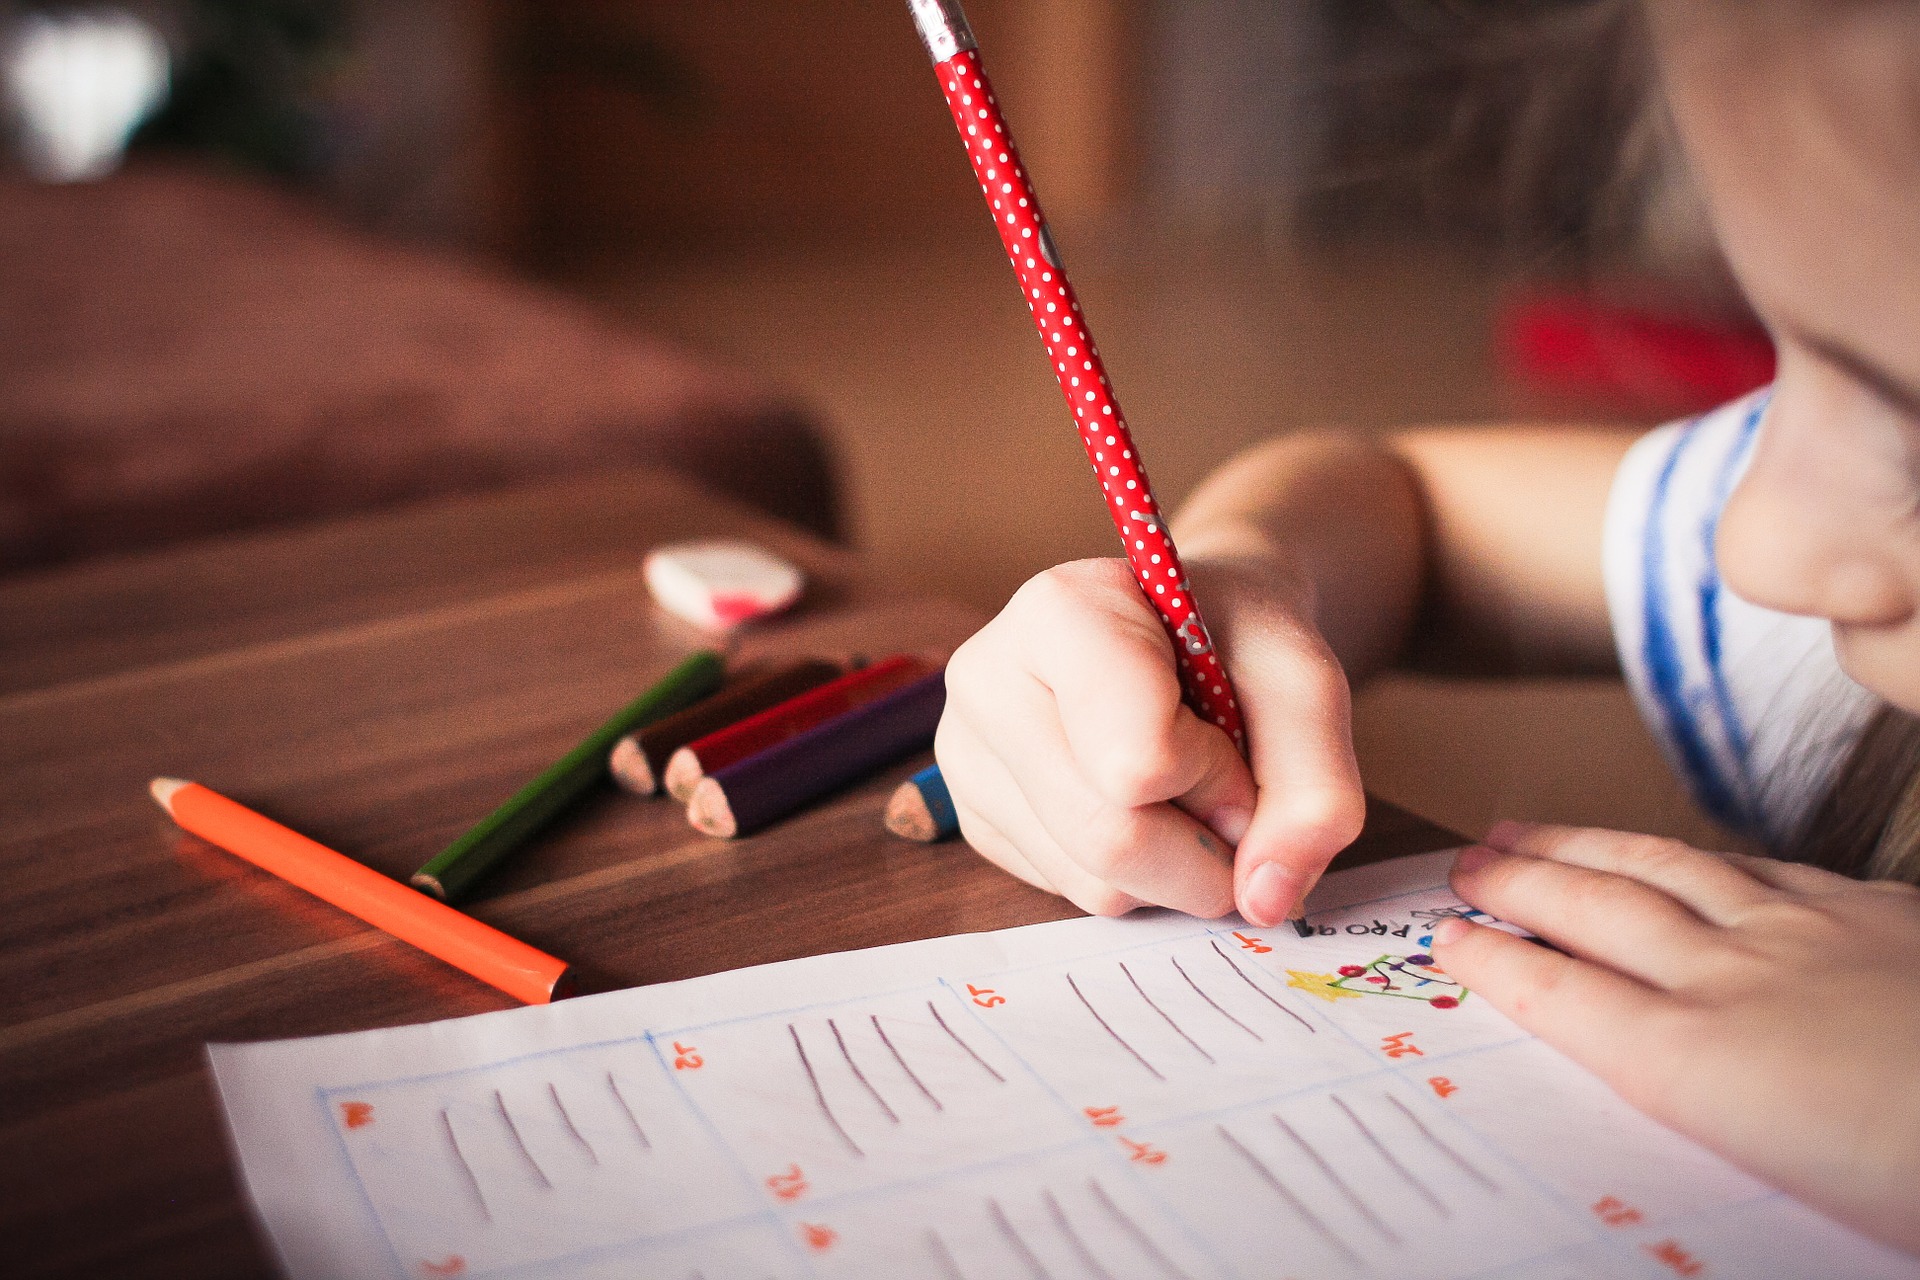 Una alumna realiza sus actividades escolares. (Foto: Pixabay)